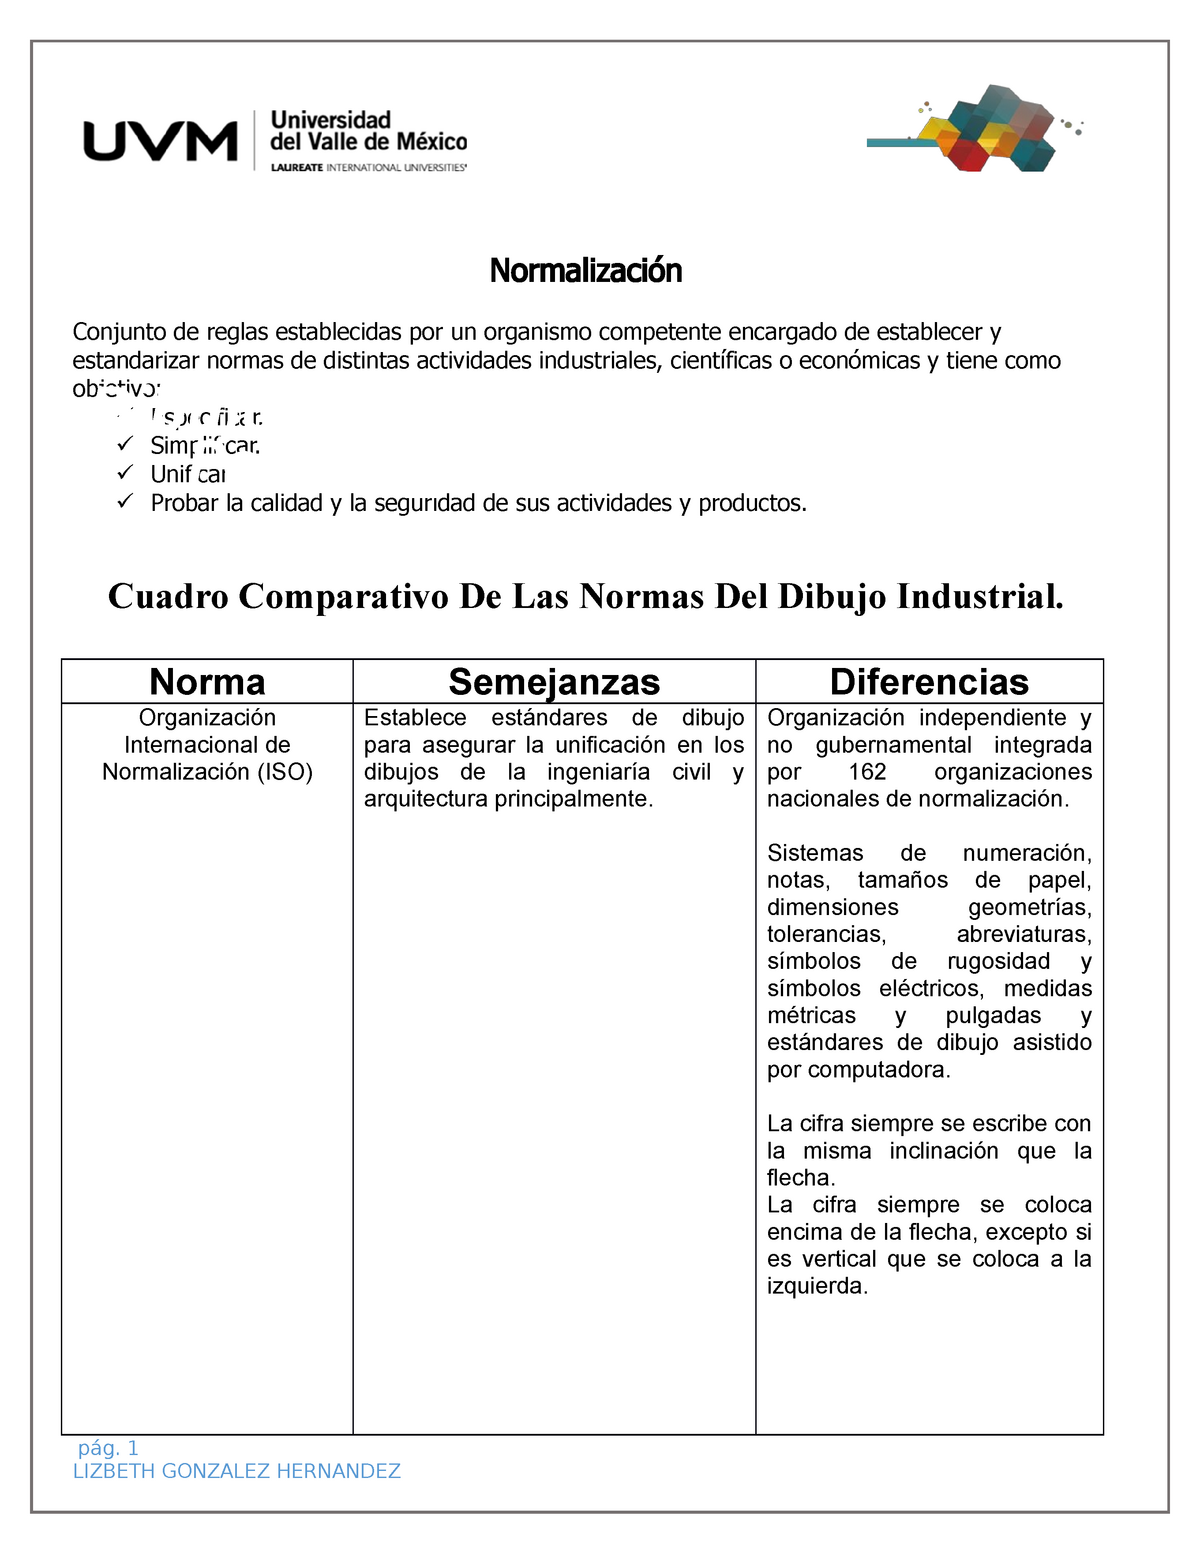 Act2 - Practica 2 - Normalización Conjunto de reglas establecidas por un  organismo competente - Studocu